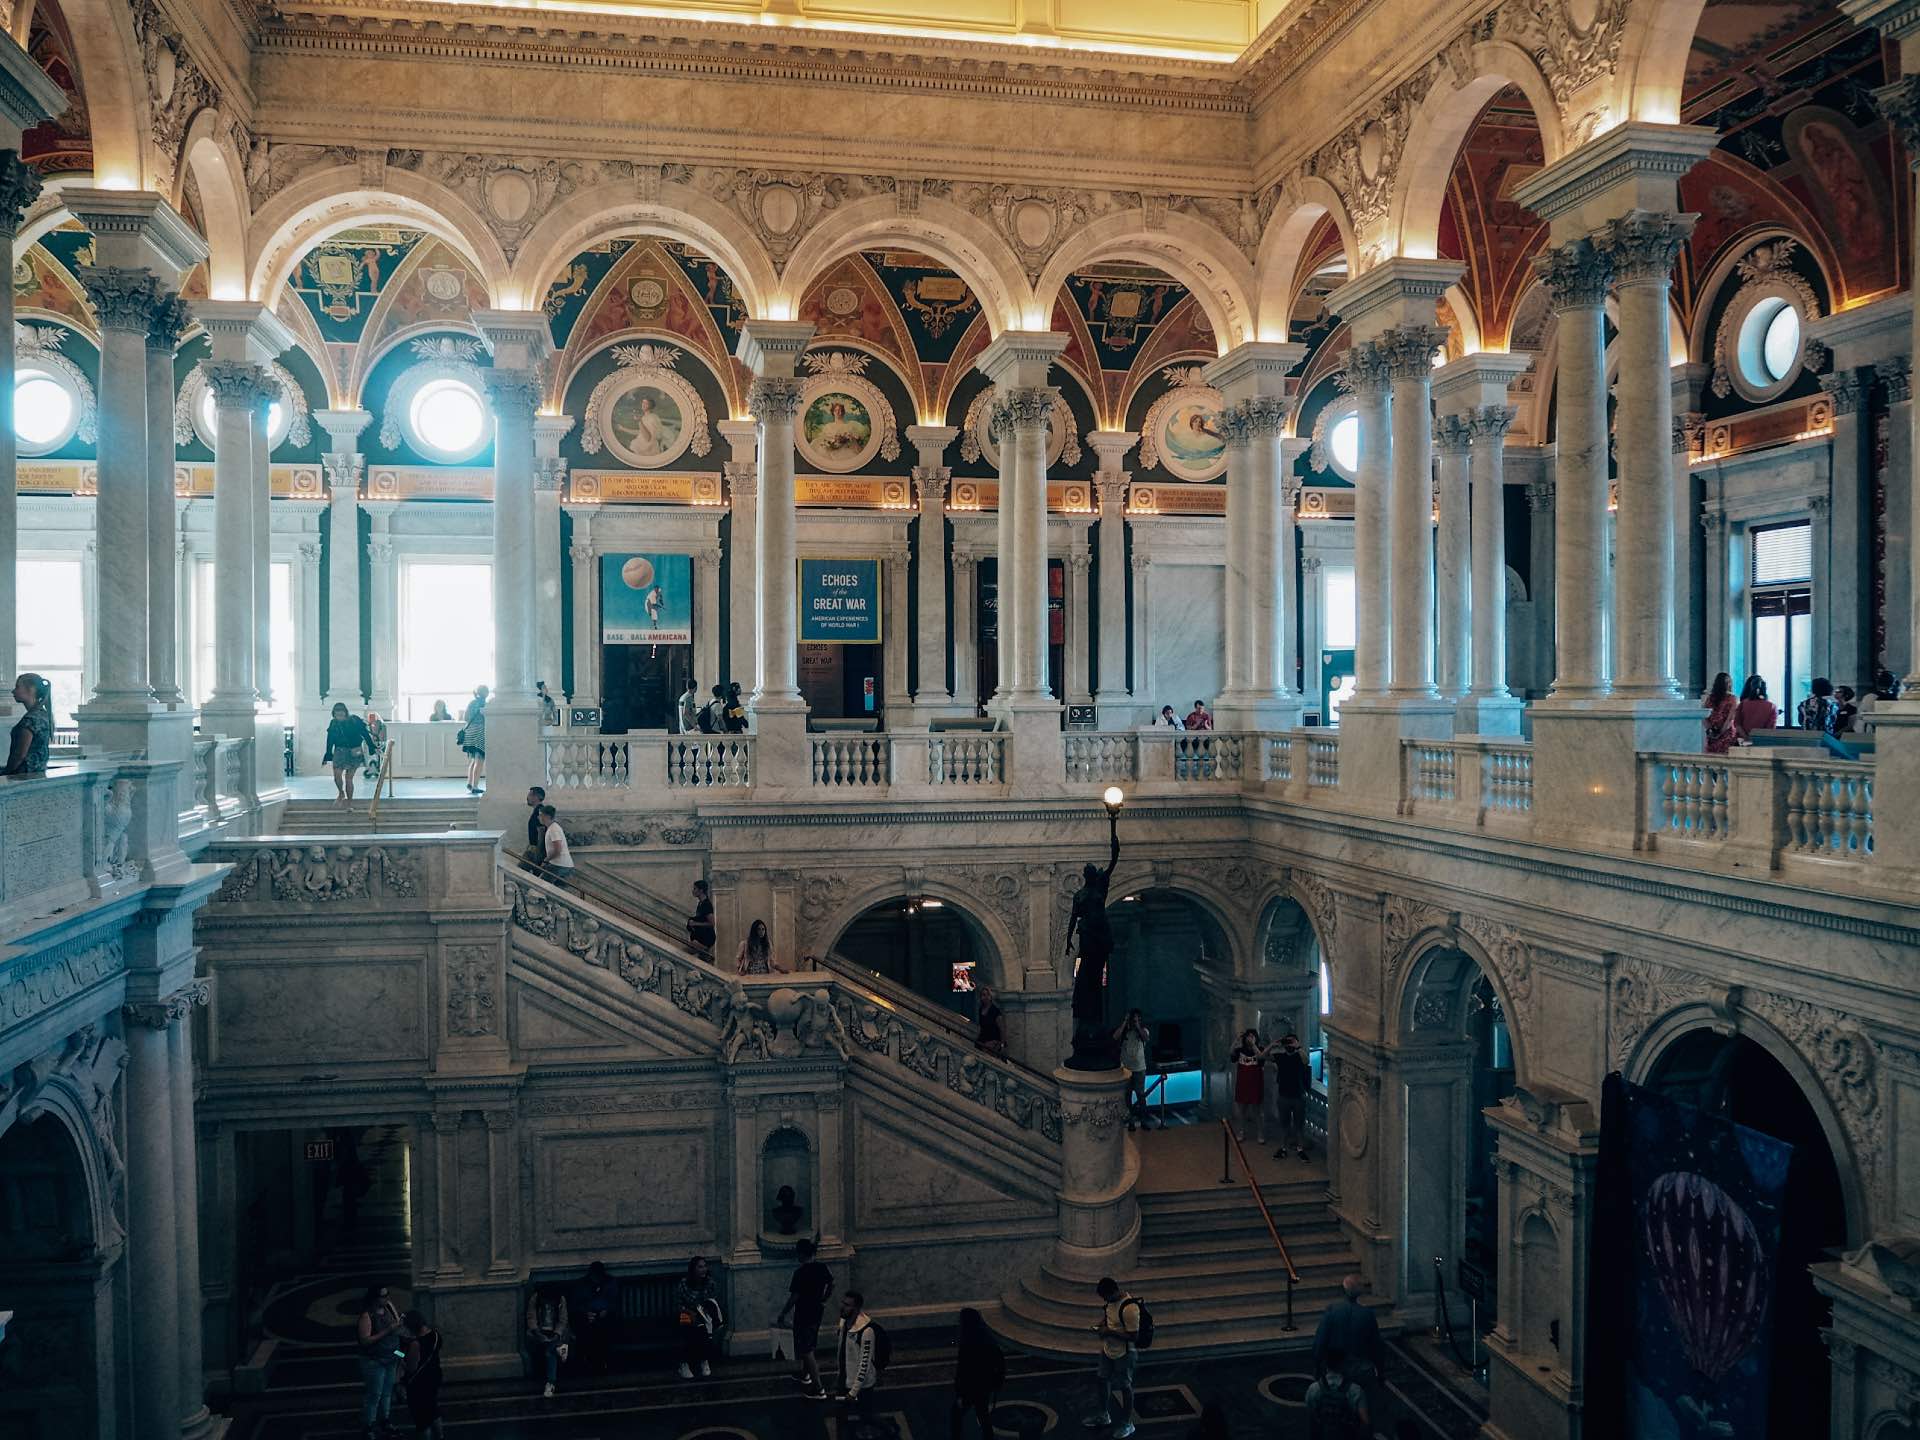 El Capitolio, el mejor sitio que visitar en Washington